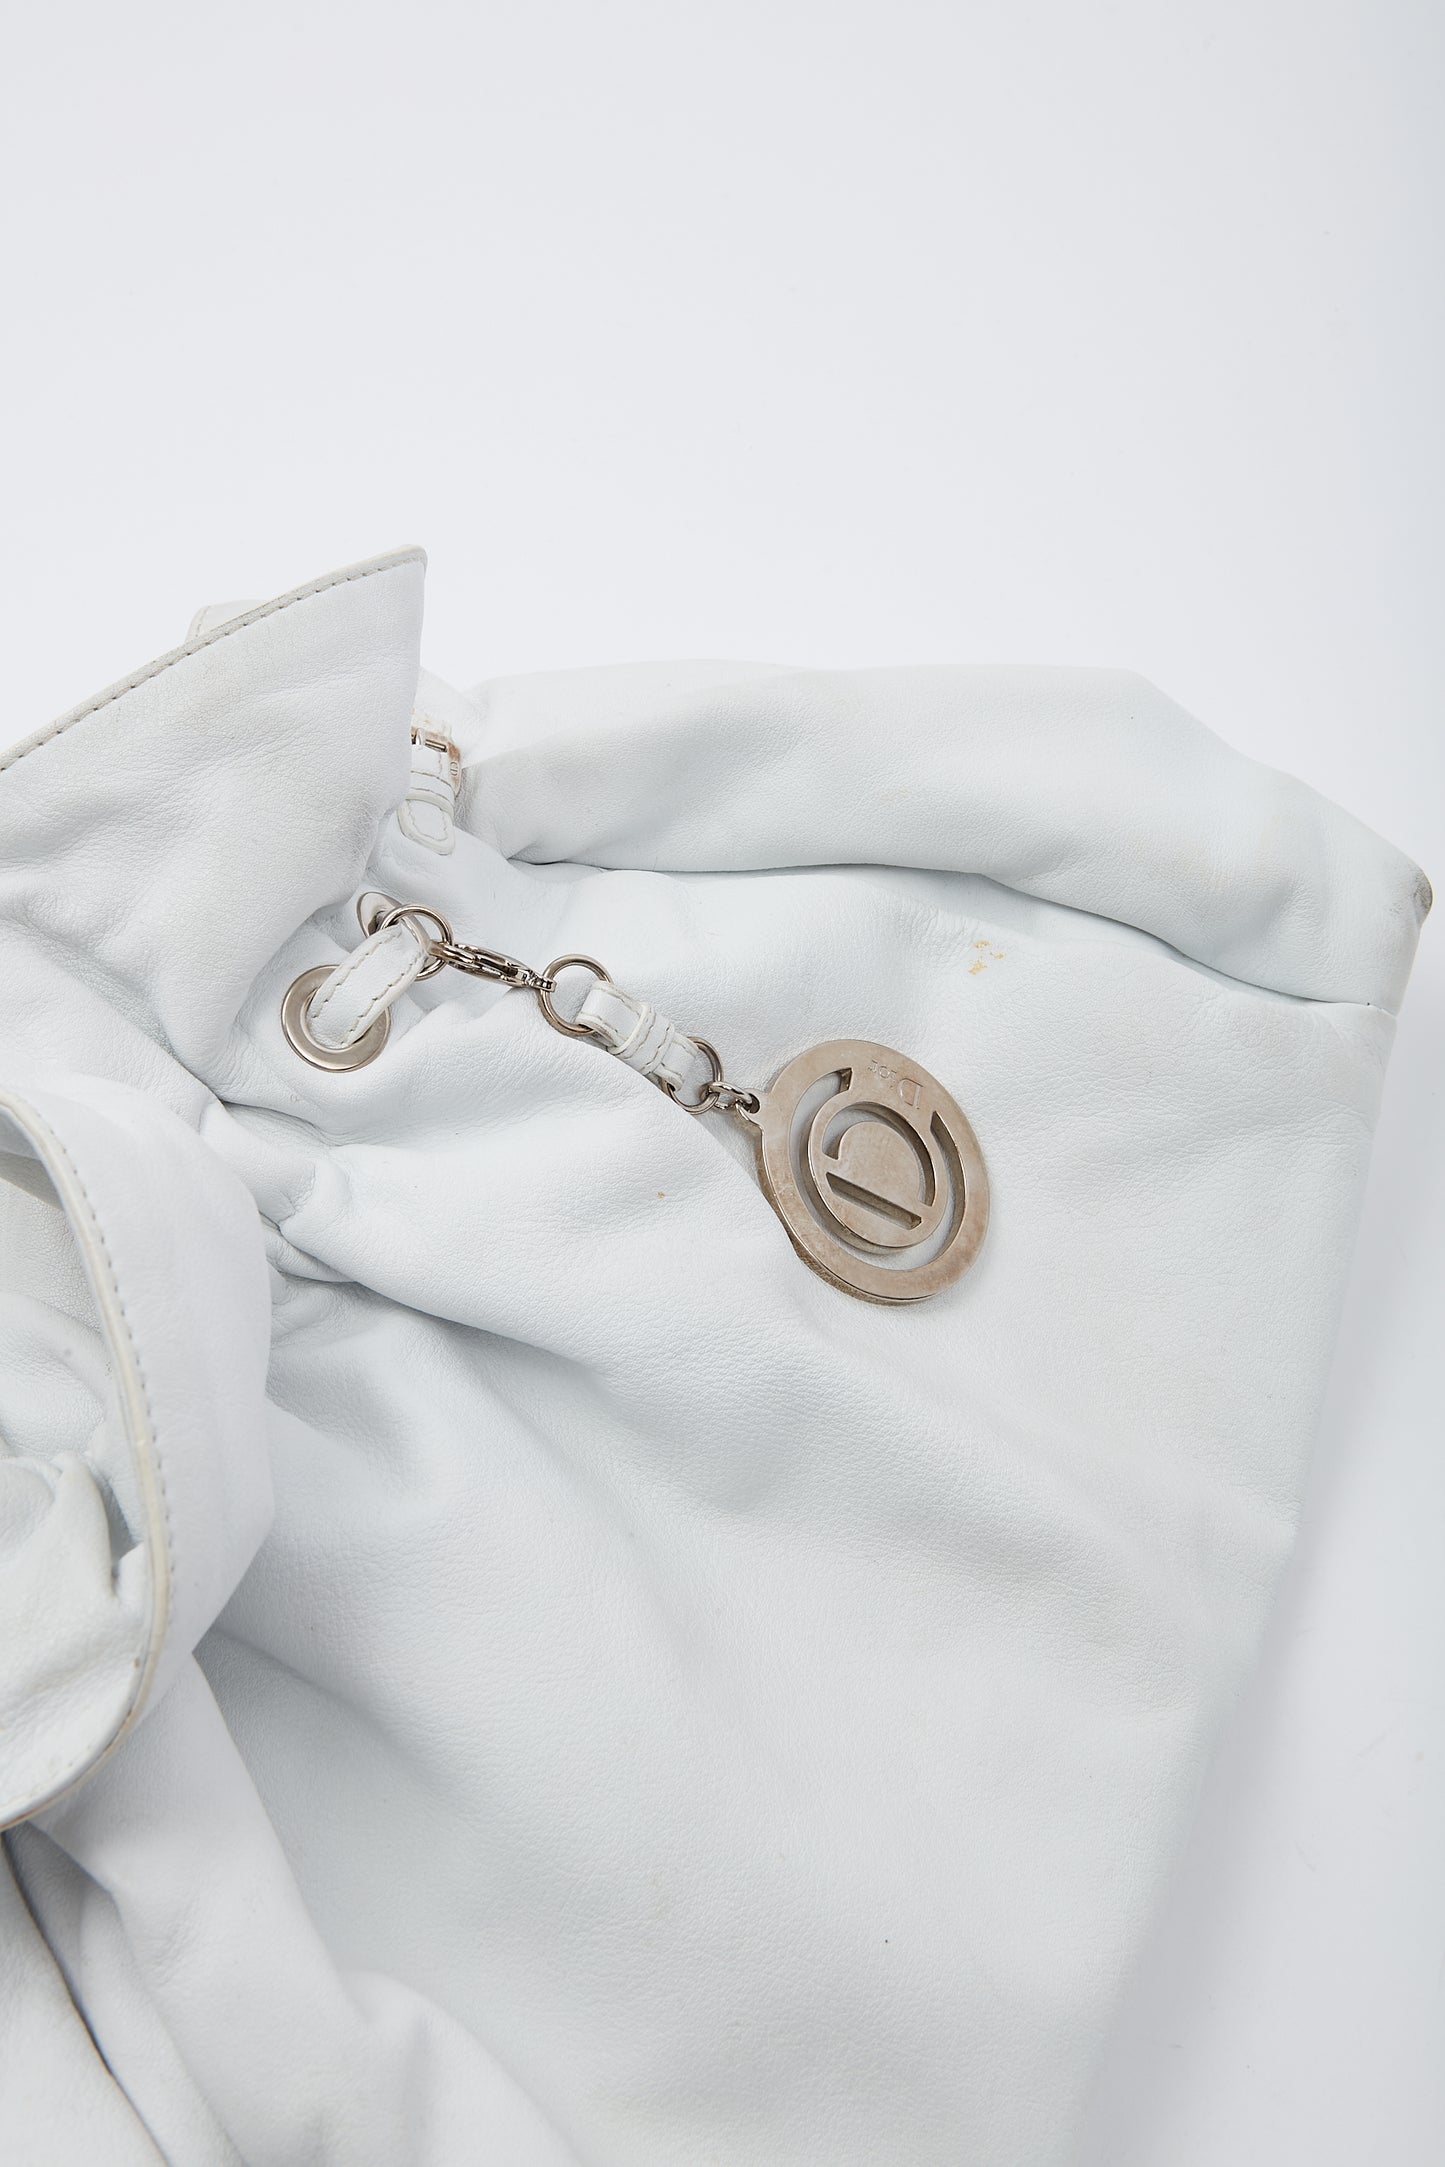 Dior White Leather Le Trente Shoulder bag